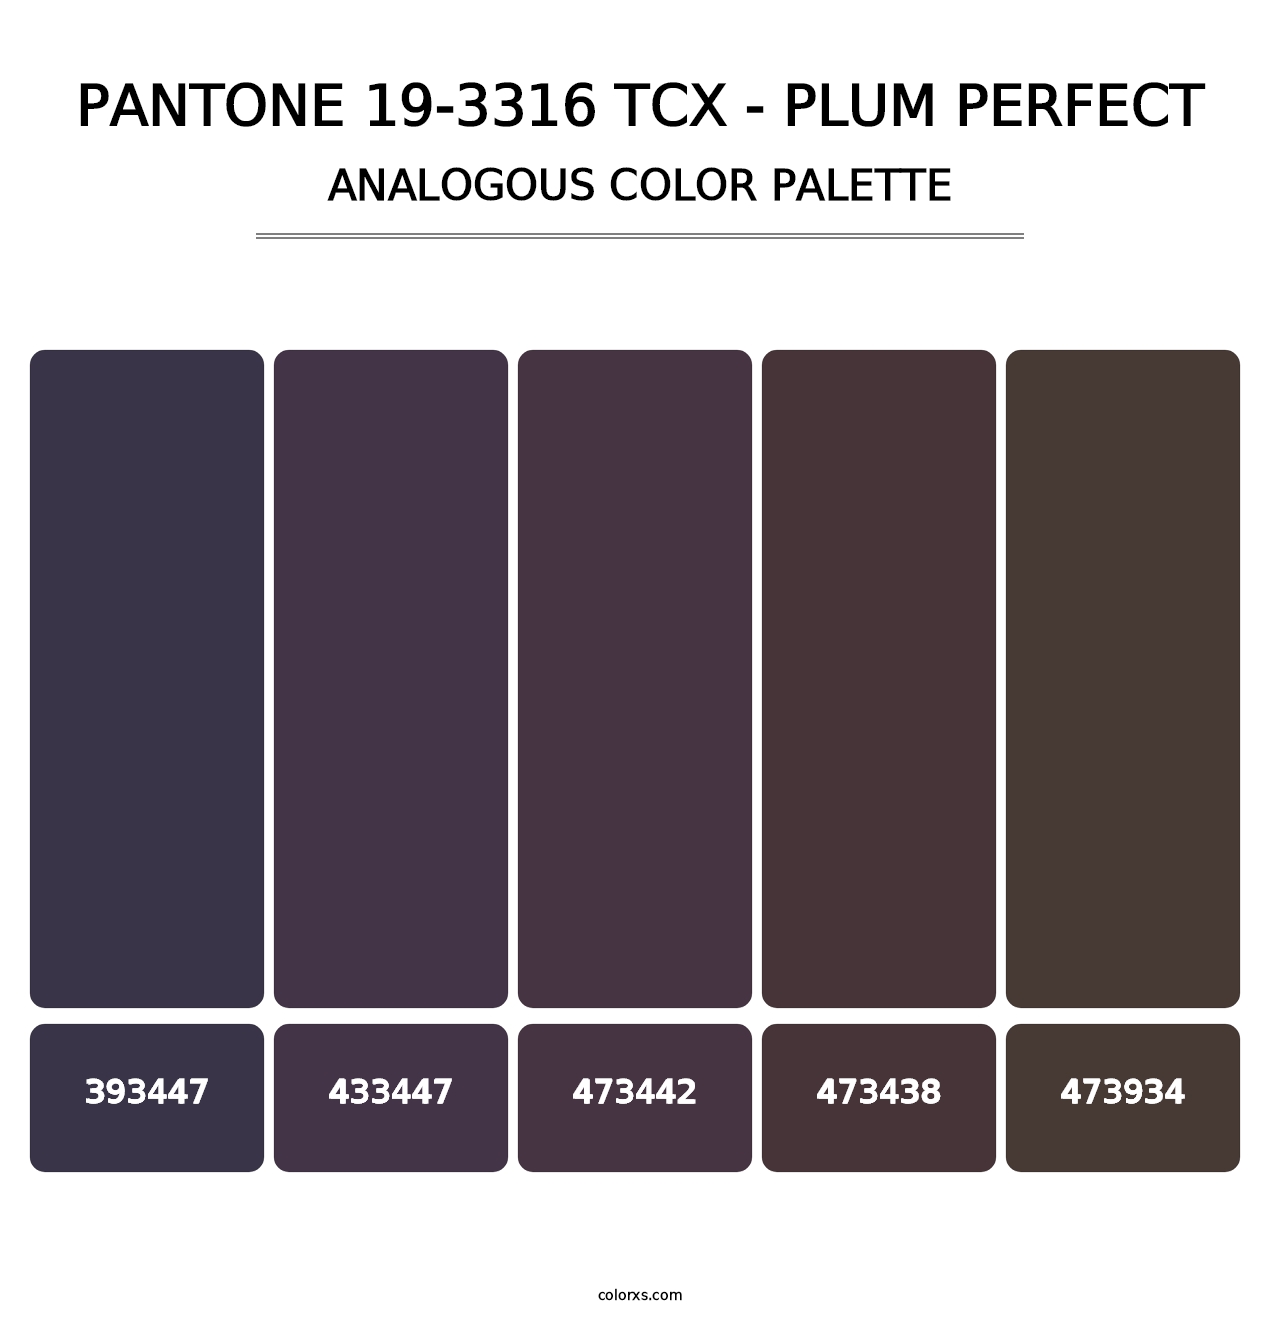 PANTONE 19-3316 TCX - Plum Perfect - Analogous Color Palette